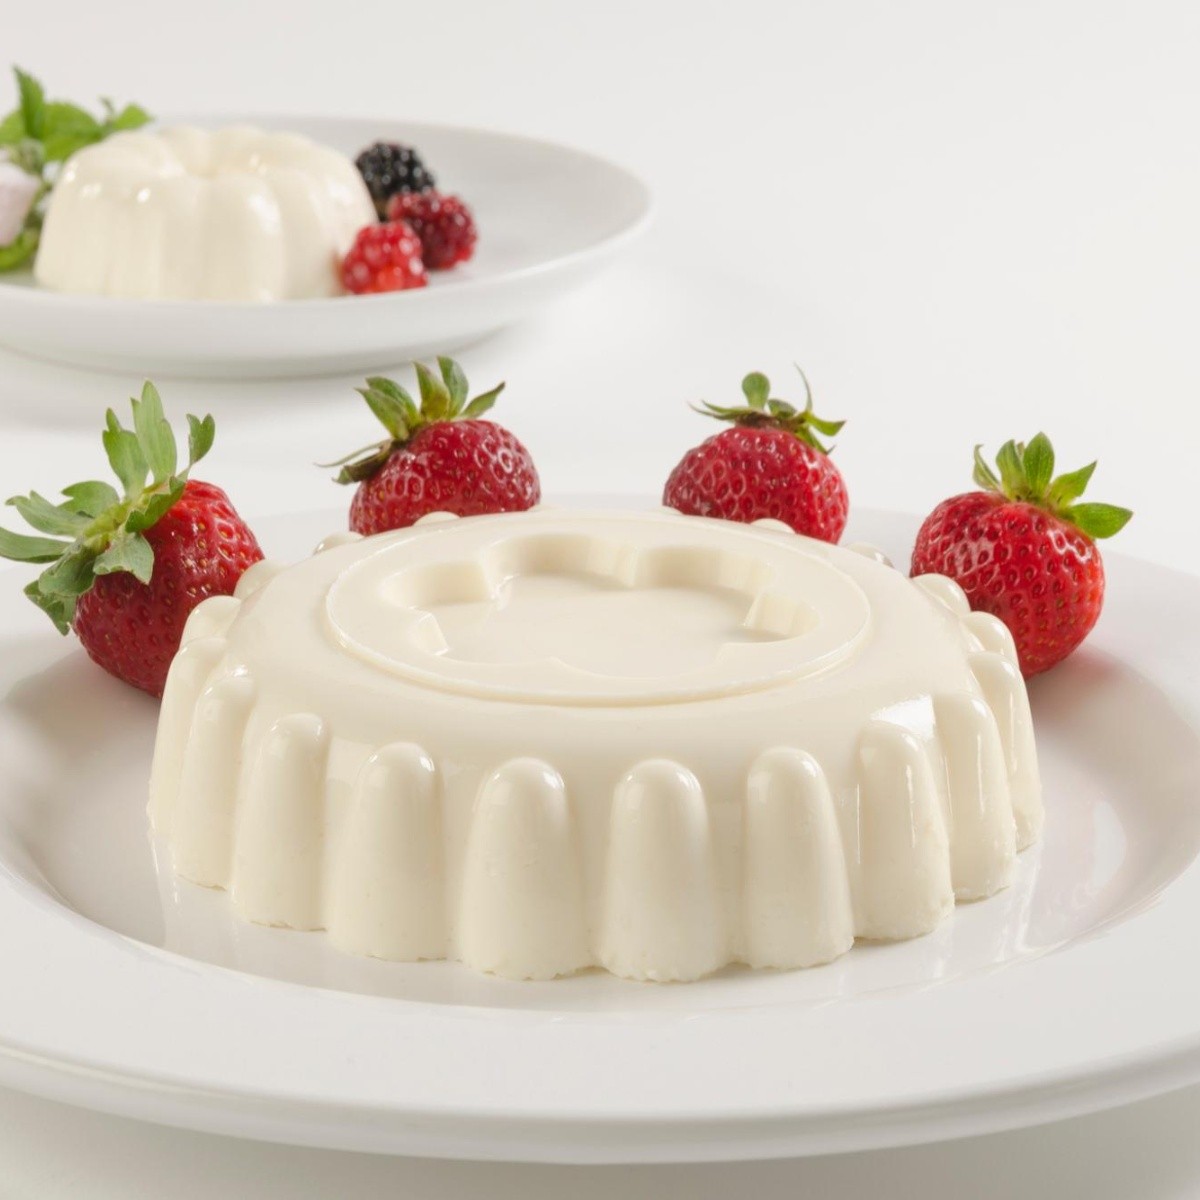 Recetas de gelatina: Gelatina de yogurt para quienes gustan de sabores  diferentes | El Informador